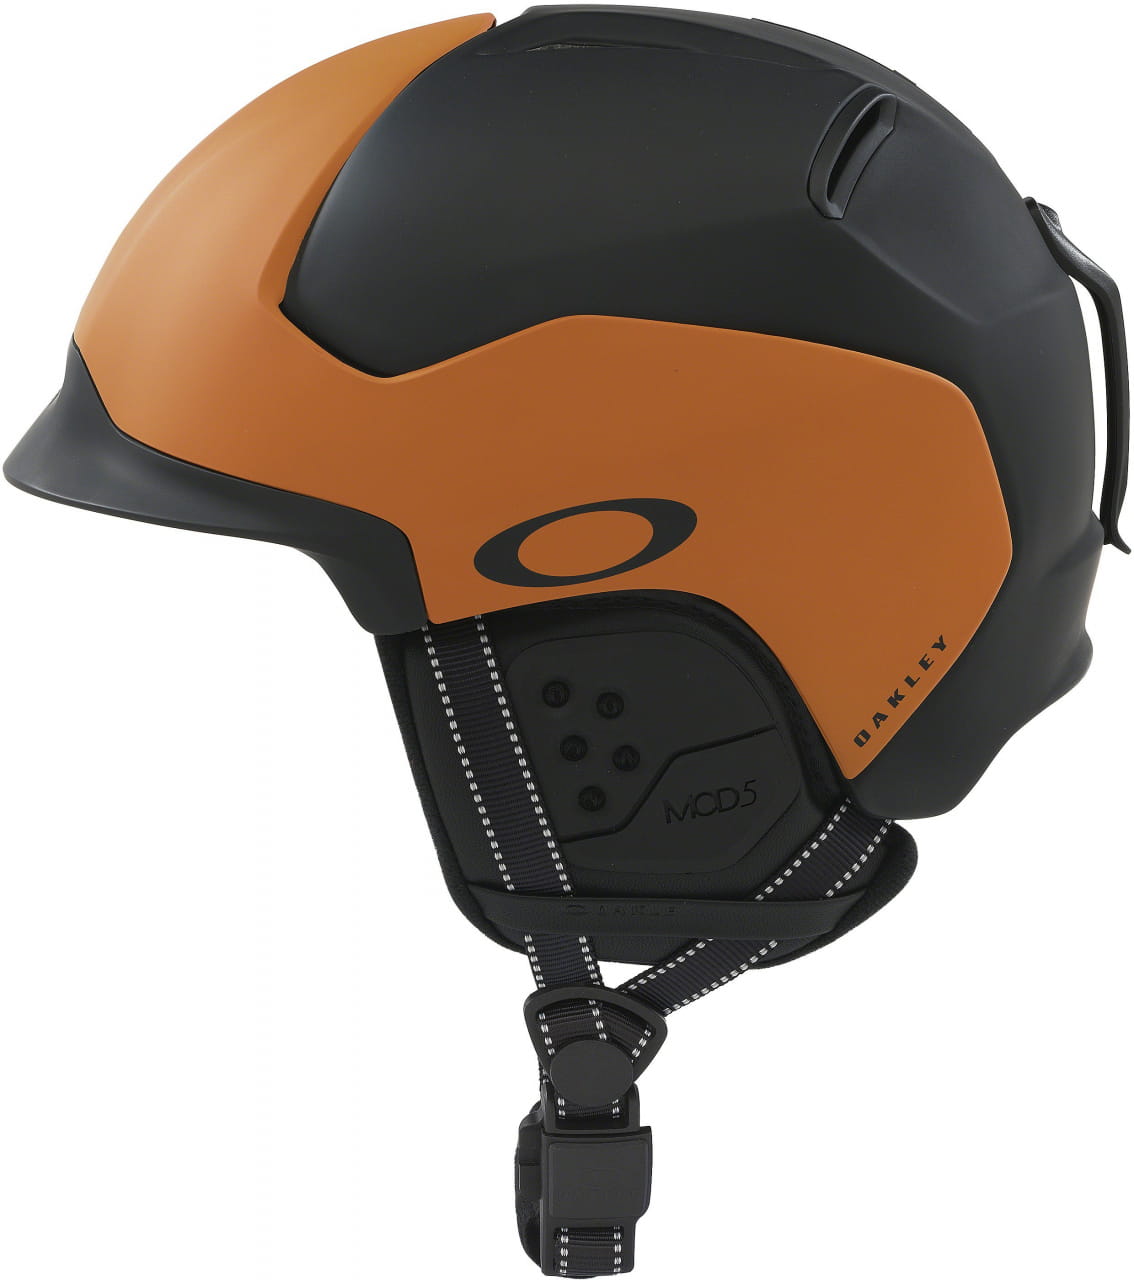 Lyžiarska helma Oakley Mod5